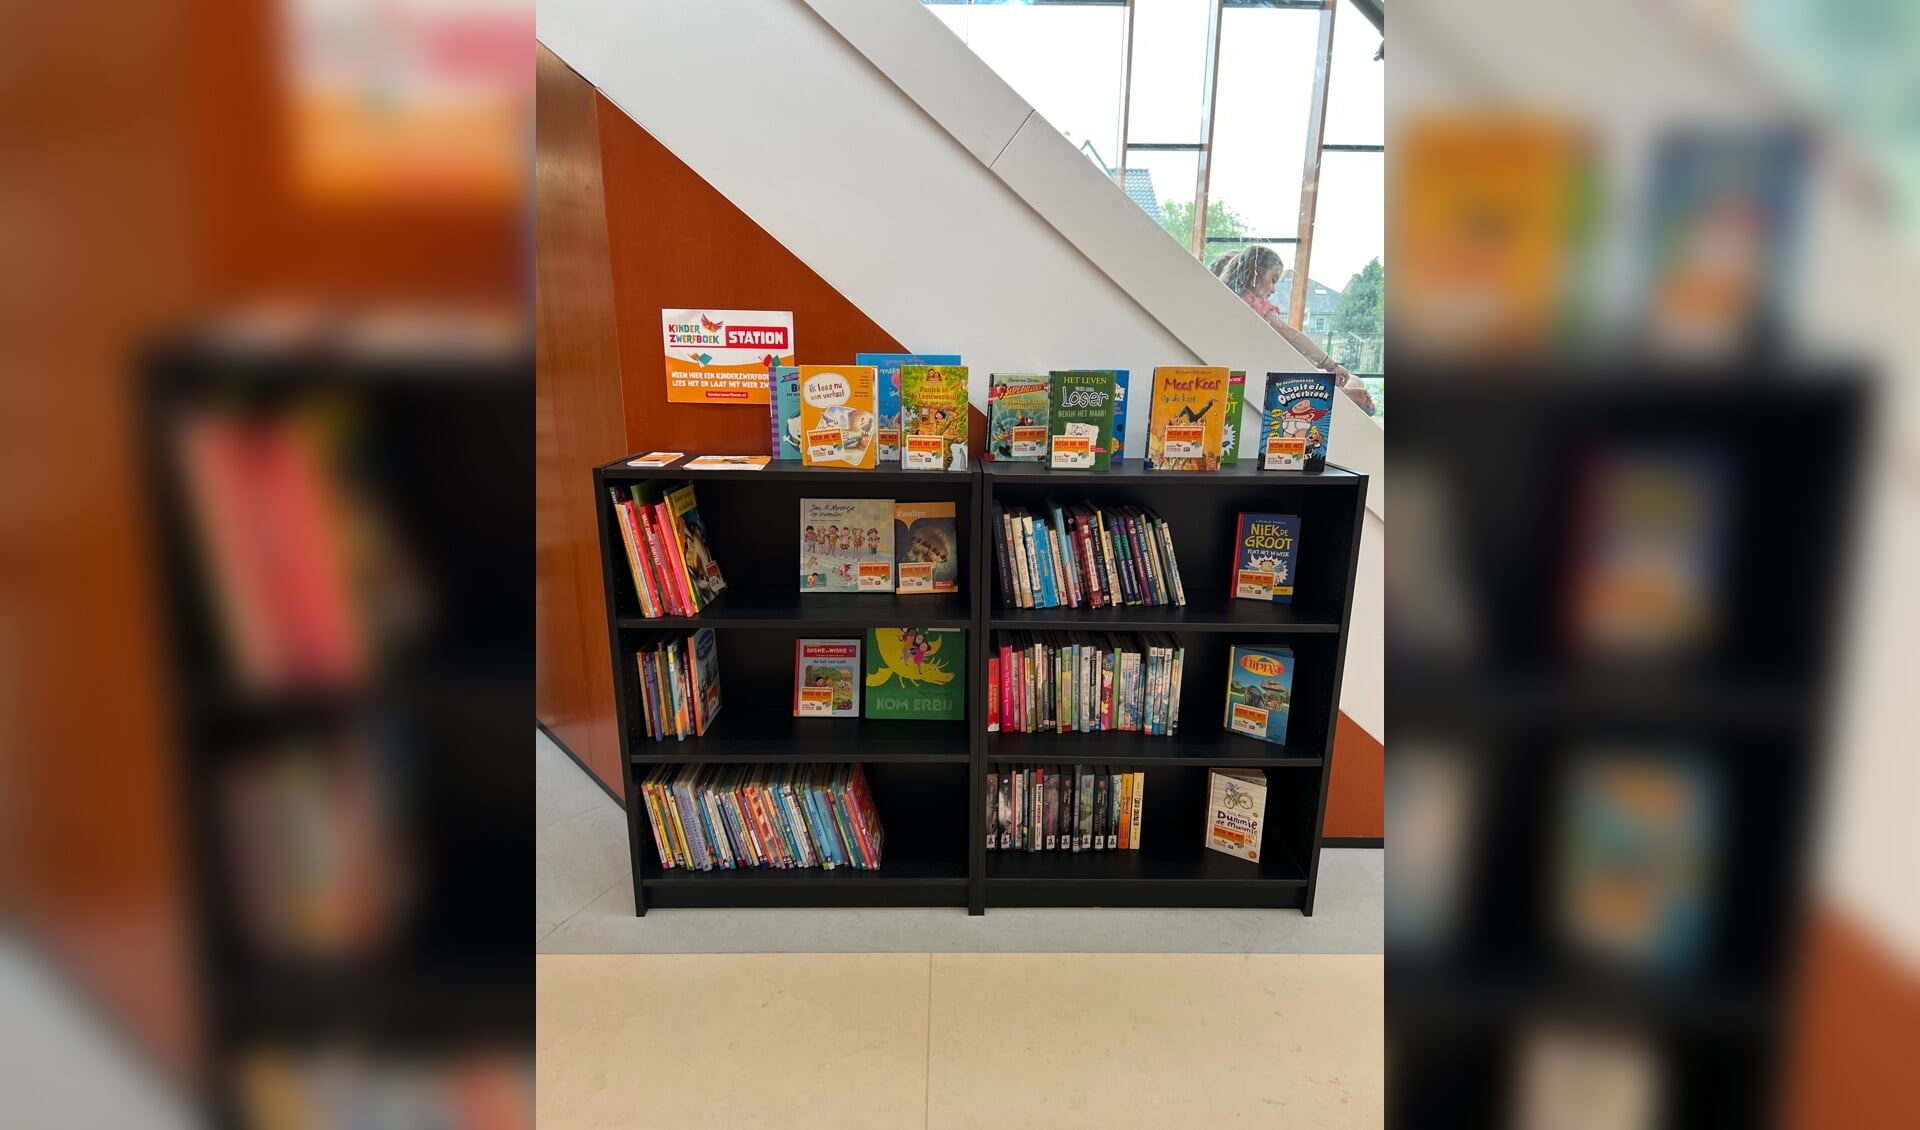 Mensen die boeken willen doneren voor de kinder-zwerfboeken-kast kunnen die afgeven op basisschool De Regenboog, Aeolusweg 8 in De Bilt. De leerkracht zorgt dan voor een sticker en plaatsing in de zwerfboekenkast.